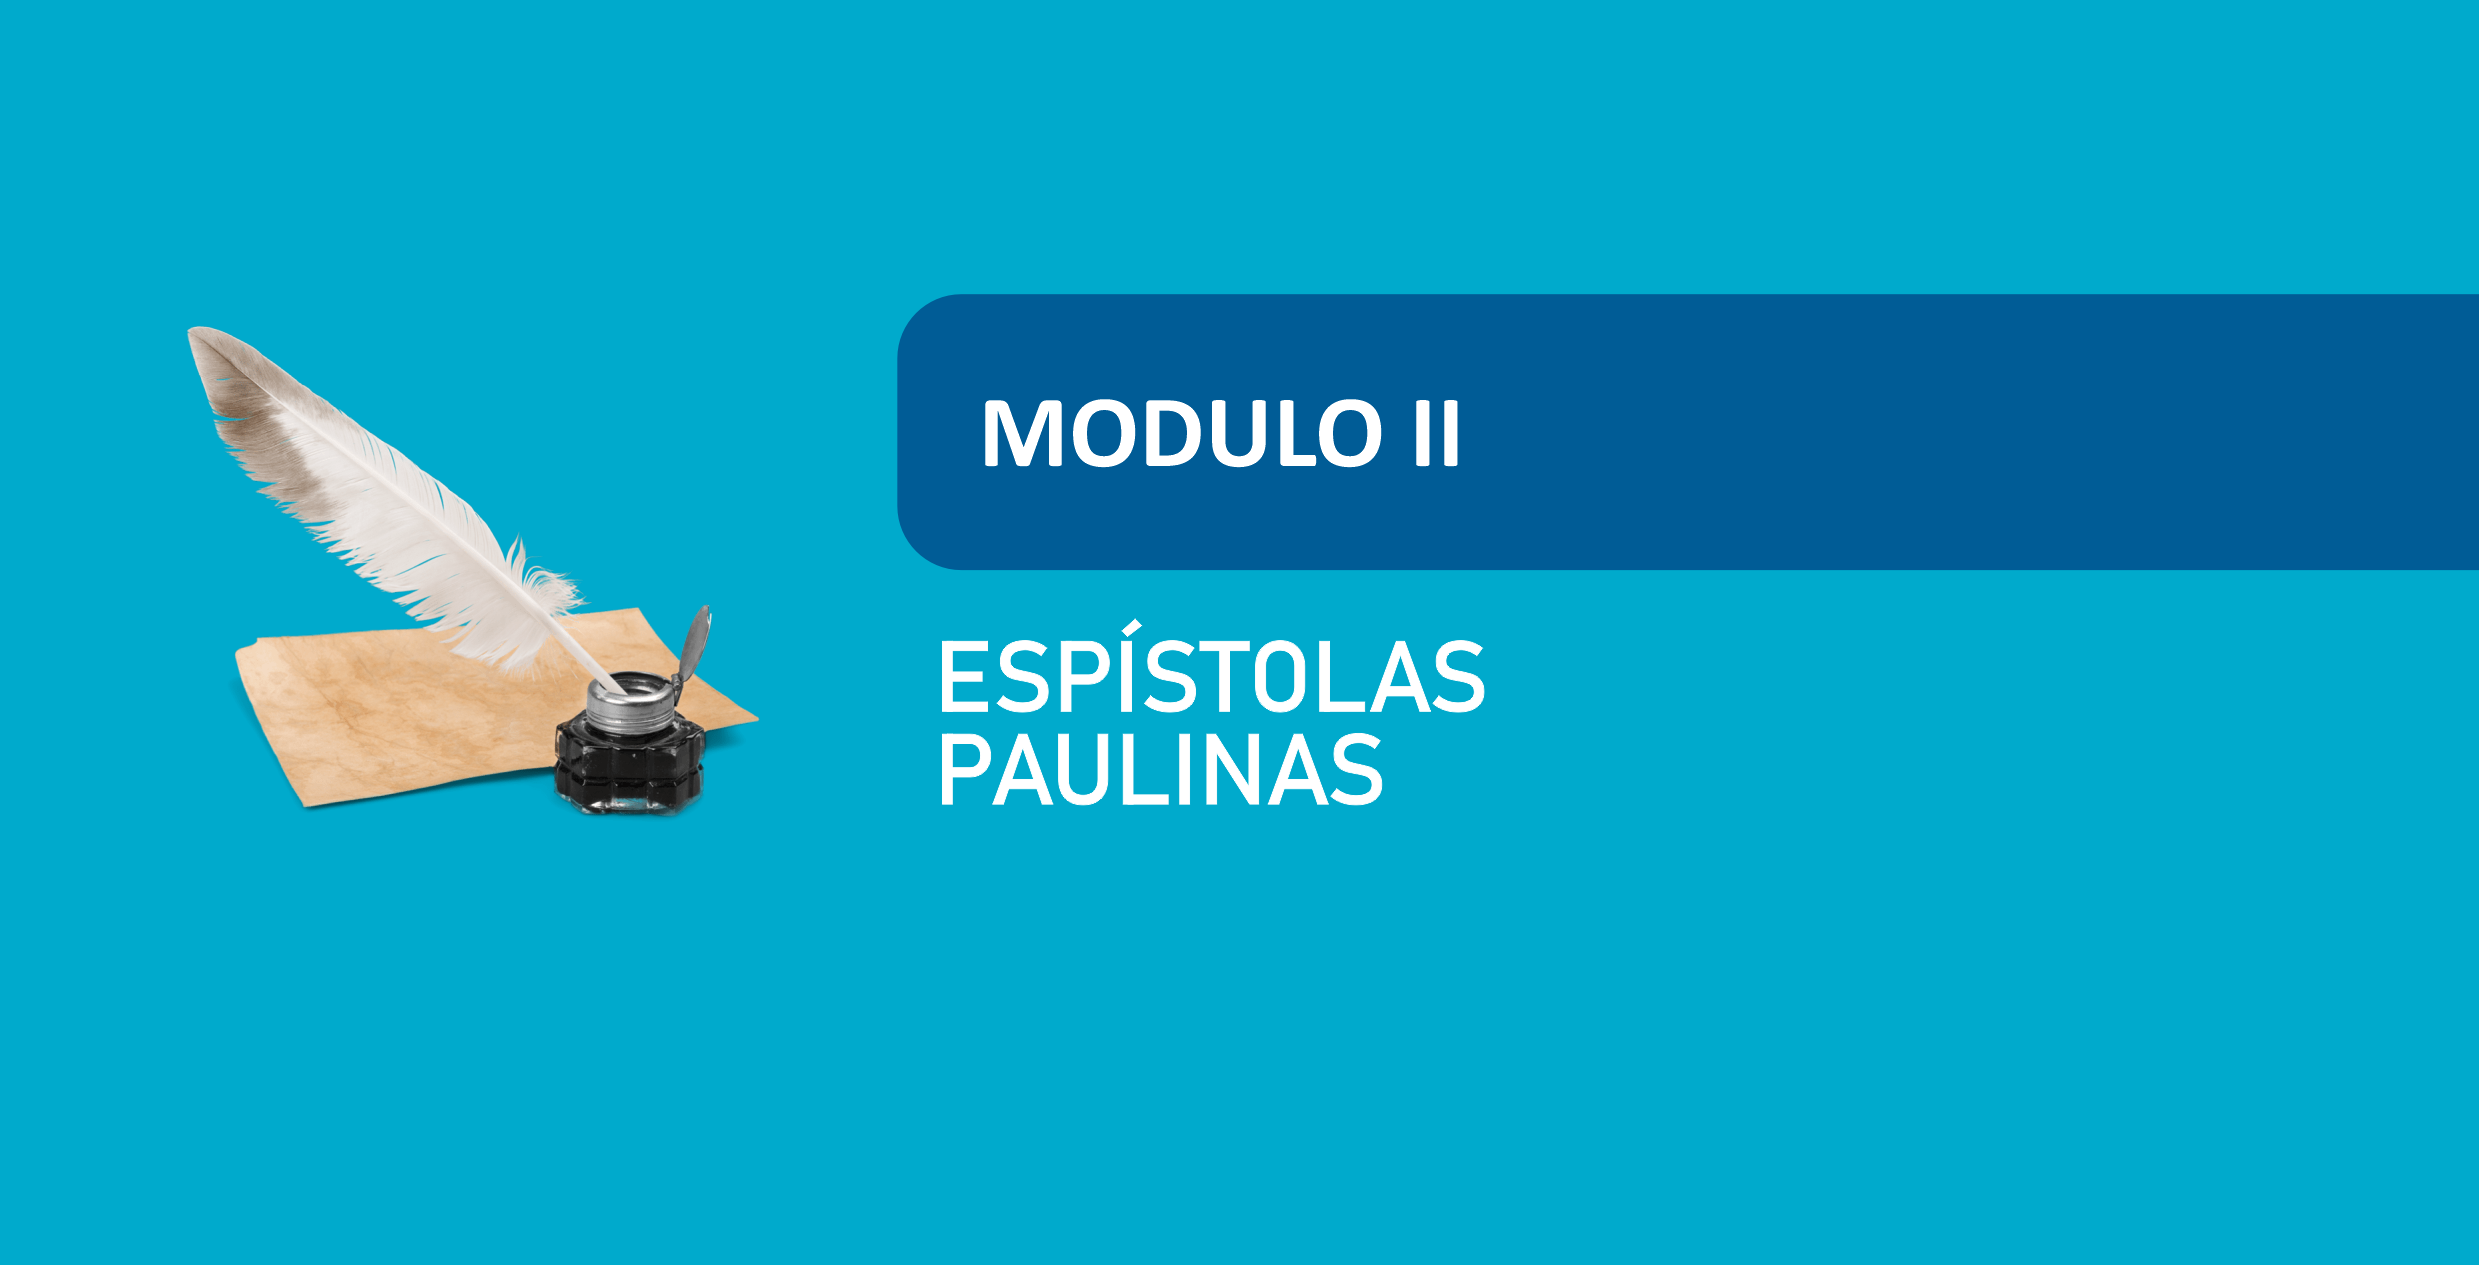 EPISTOLAS PAULINAS